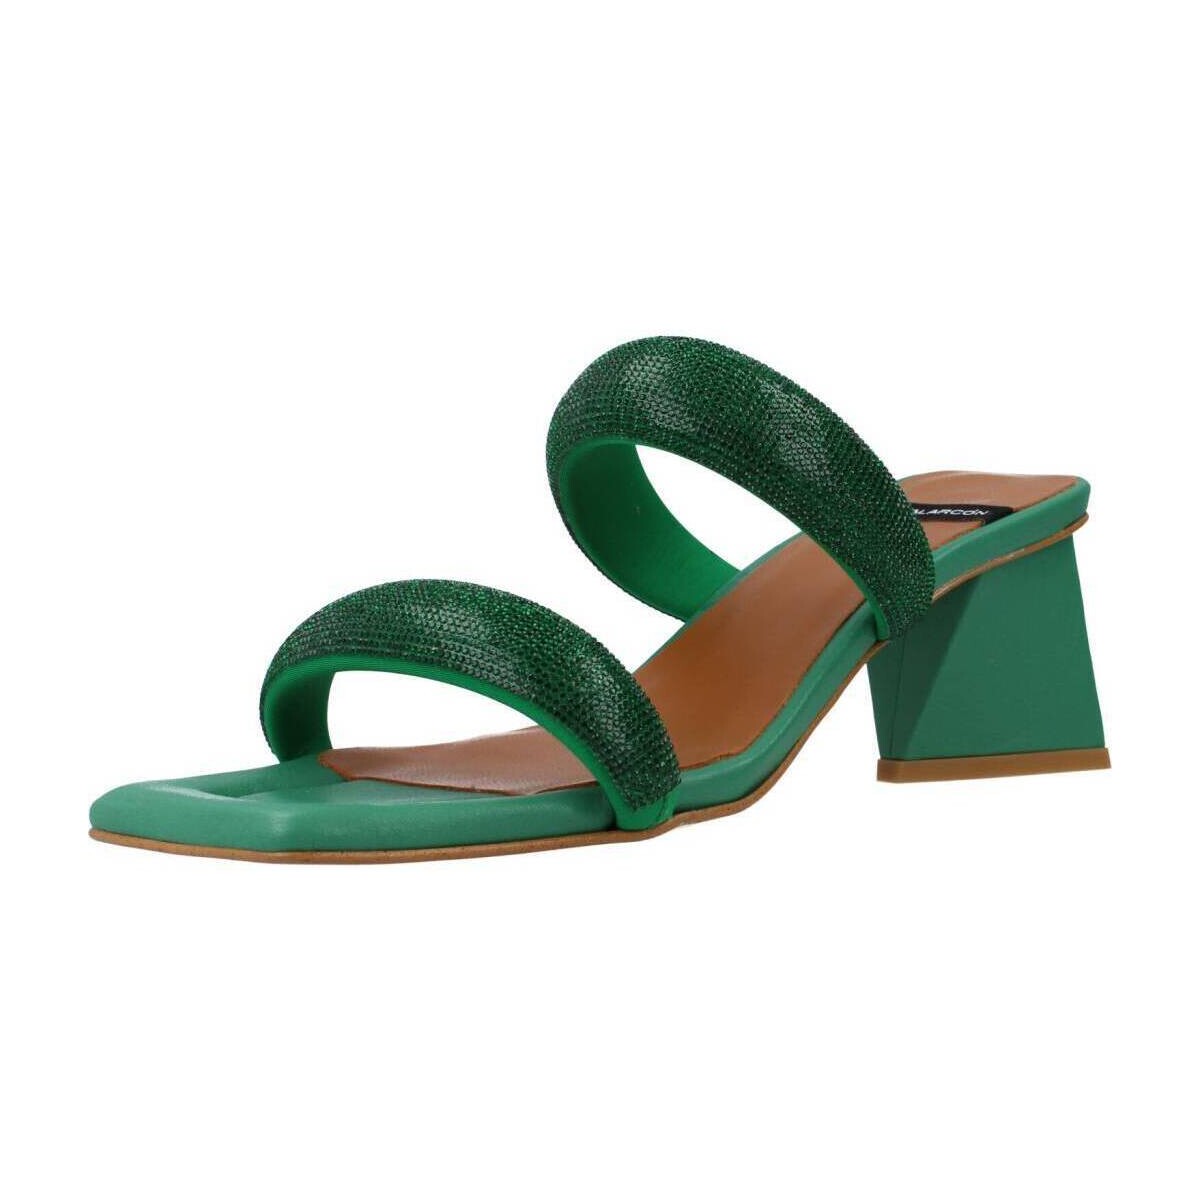 Cipők Női Szandálok / Saruk Angel Alarcon SOPHIE Zöld